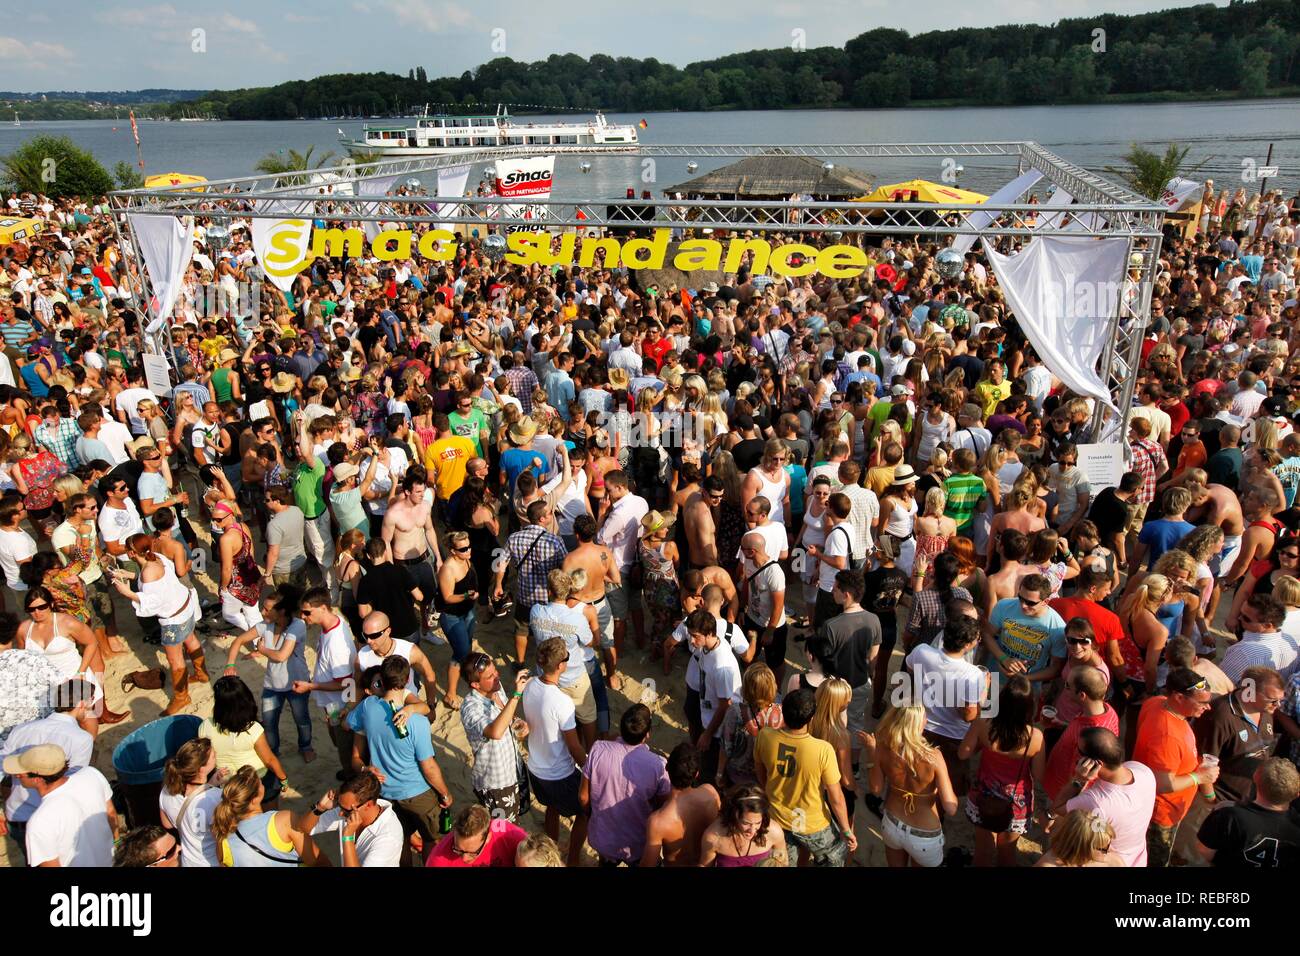 Sundance Festival, Festa da ballo con techno e musica house, in Seaside Beach Club al lago Baldeneysee, Essen Foto Stock